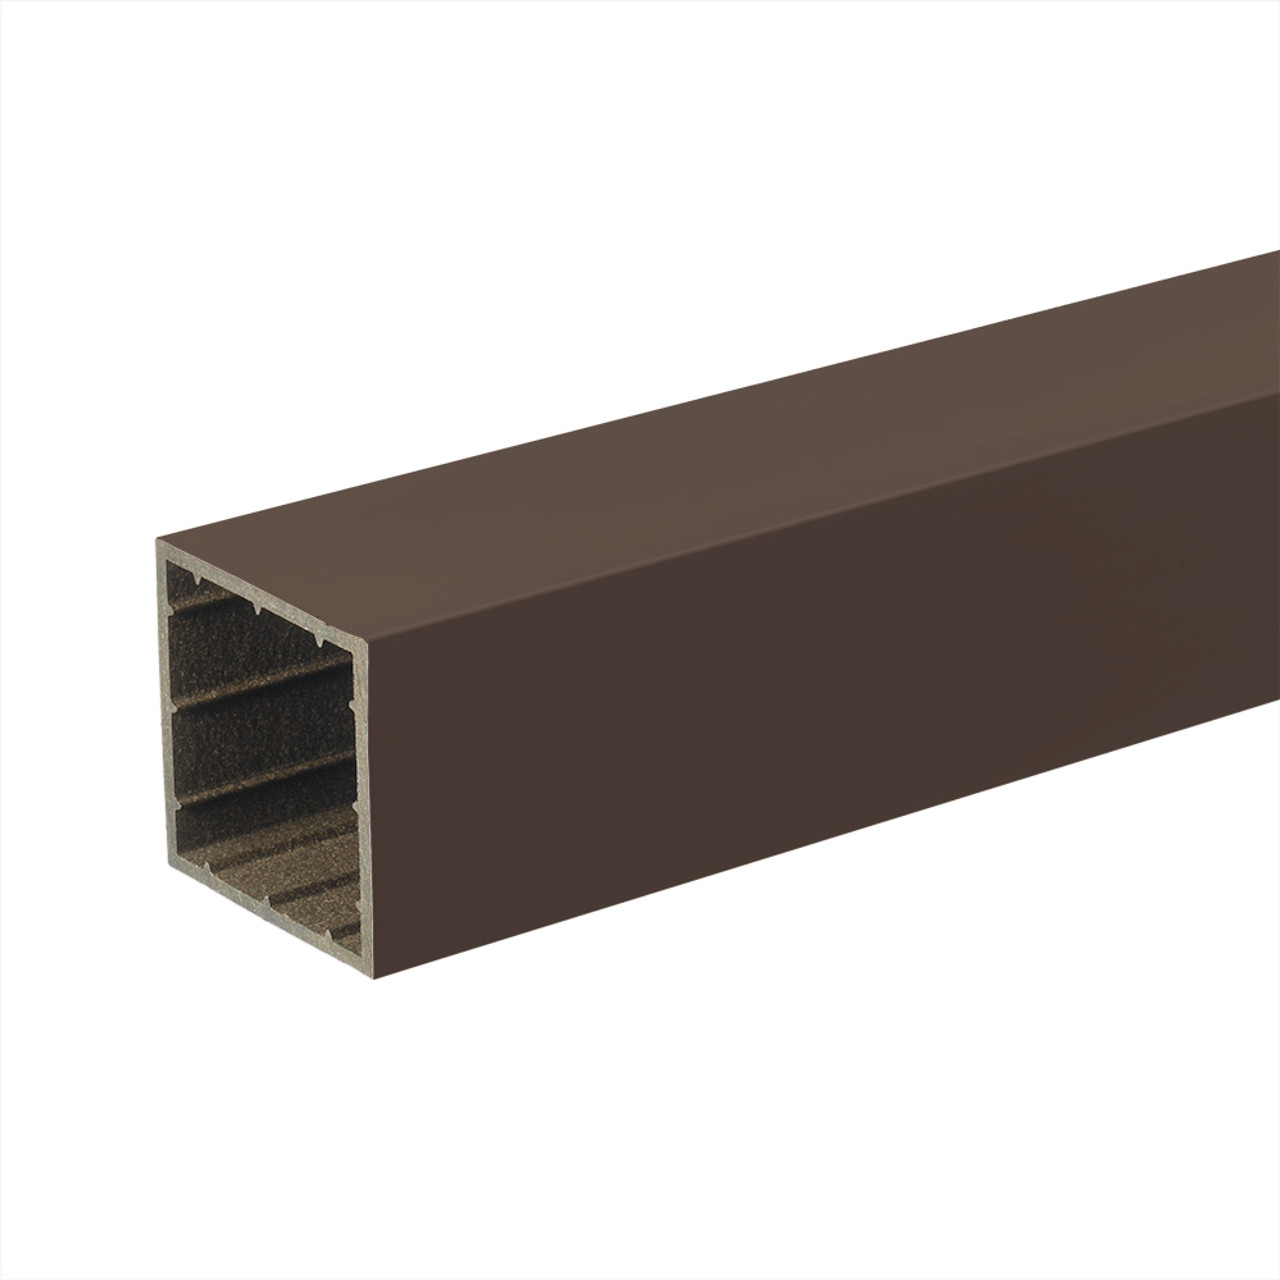 TimberTech Radiance Express 4x4 Post Sleeve Hackmann Lumber